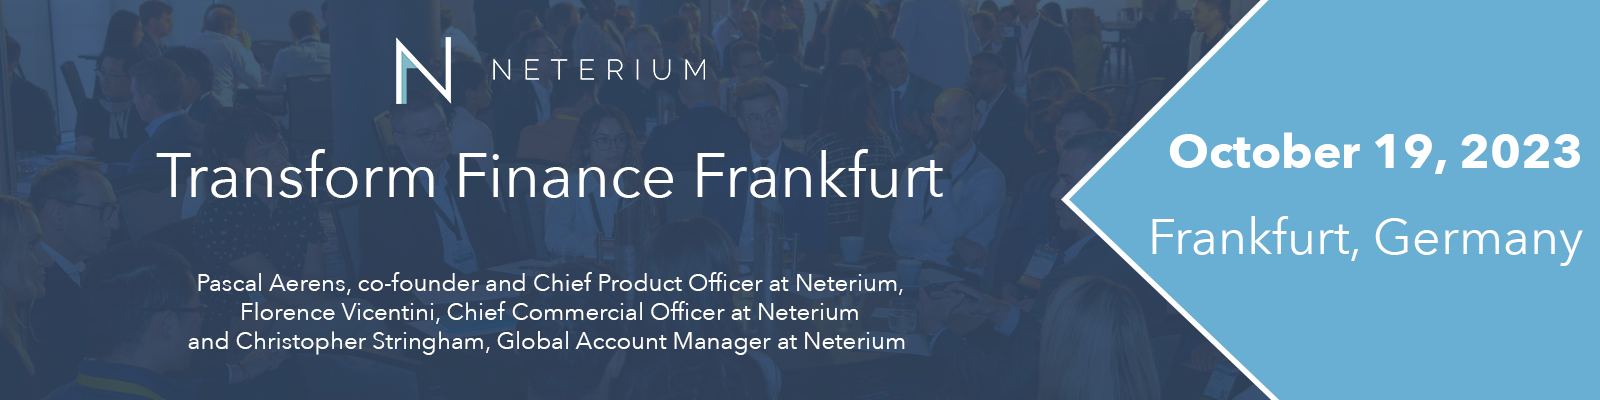 Transform Finance Frankfurt